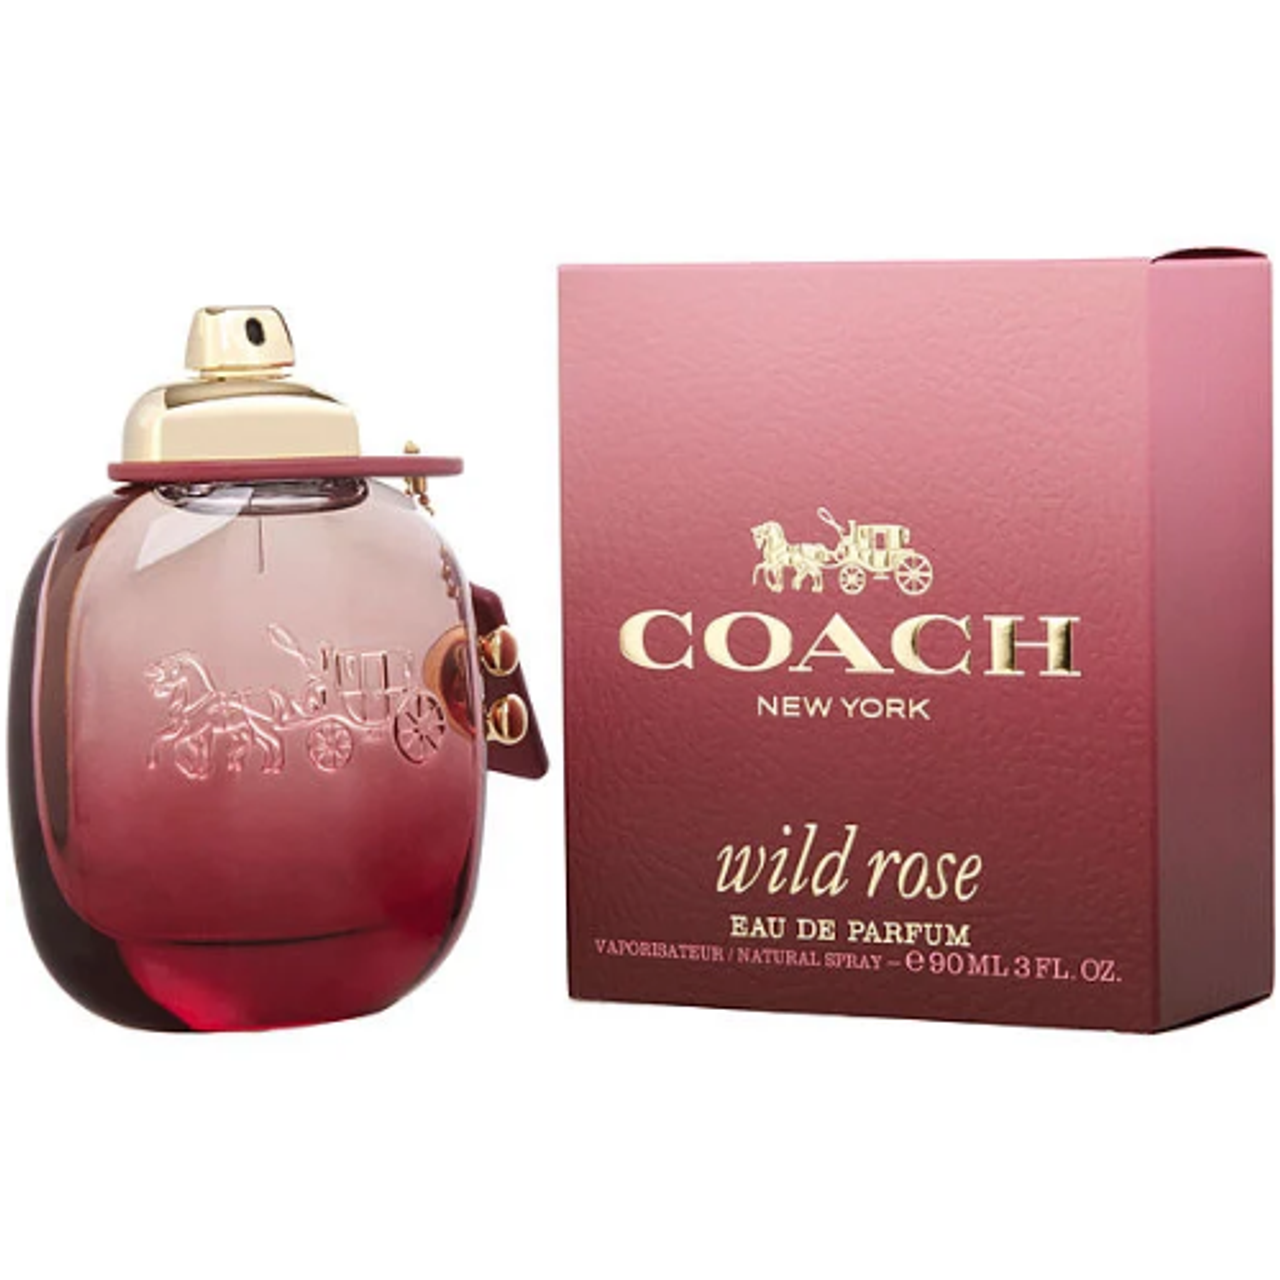 Coach Wild Rose 3.0 oz EDP eau de parfum spray womens perfume 90